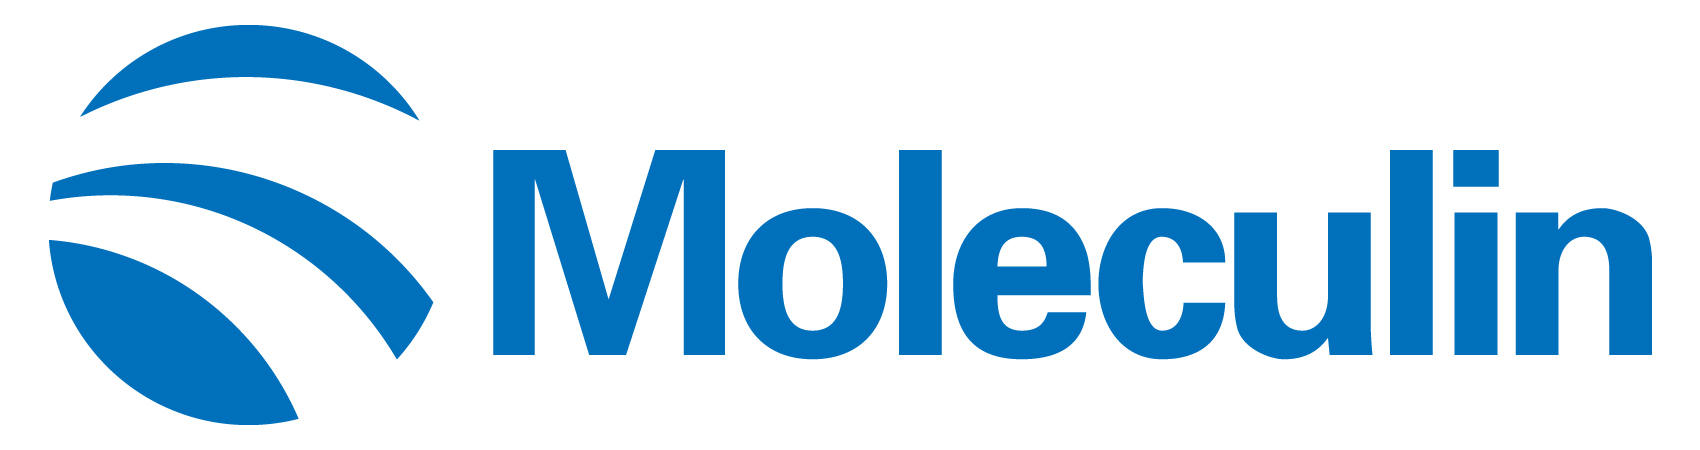 moleculin-logo_horiza54.jpg